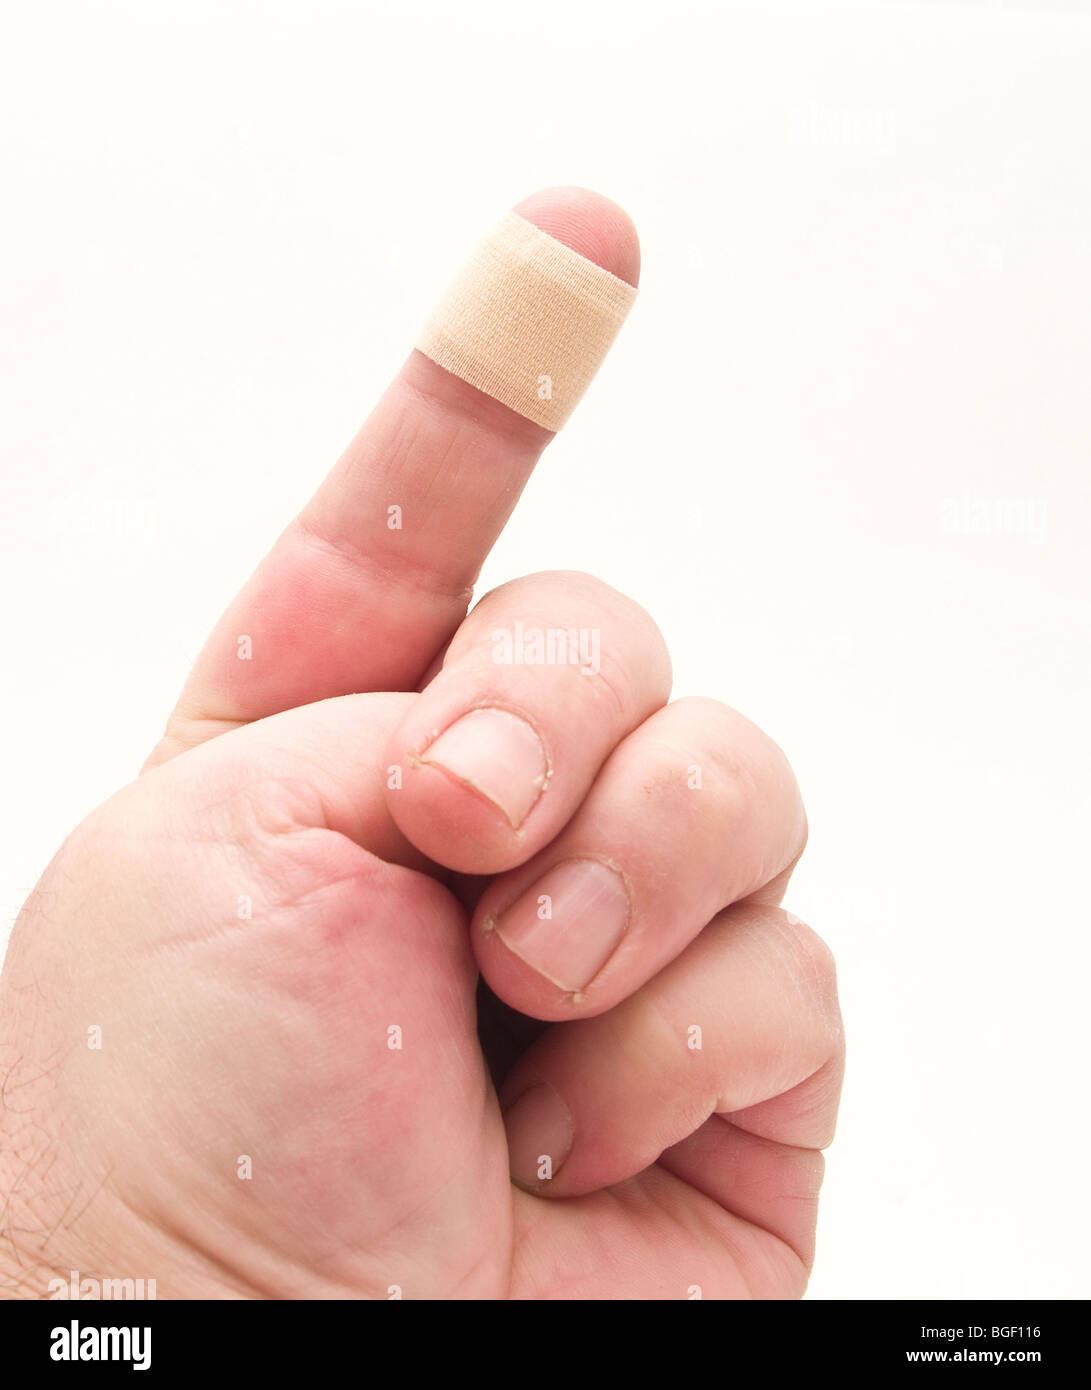 finger bandage Stock Photo